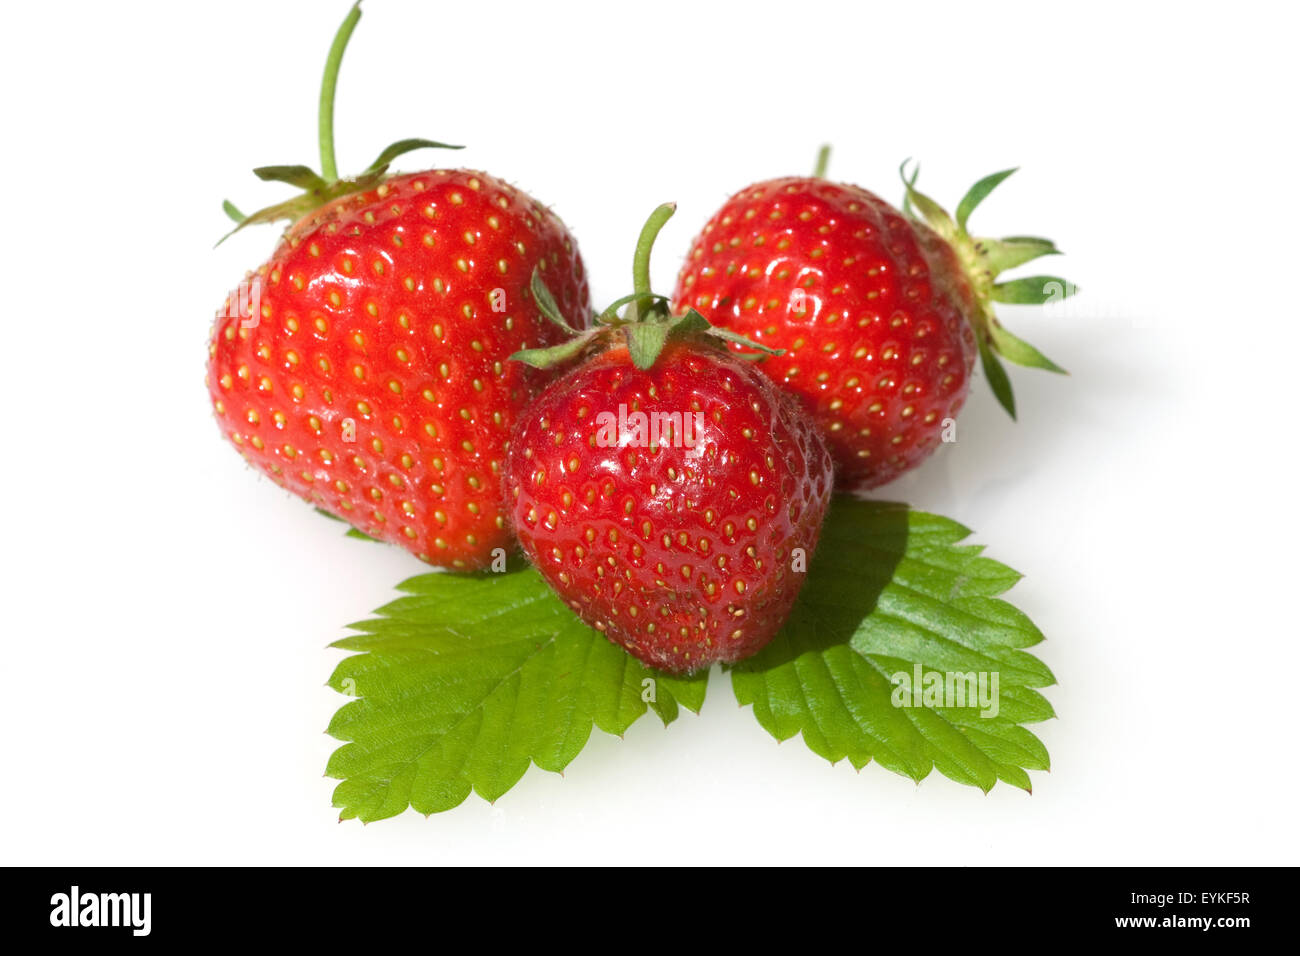 Erdbeere, Fragaria x ananassa, Beerenobst, Stock Photo